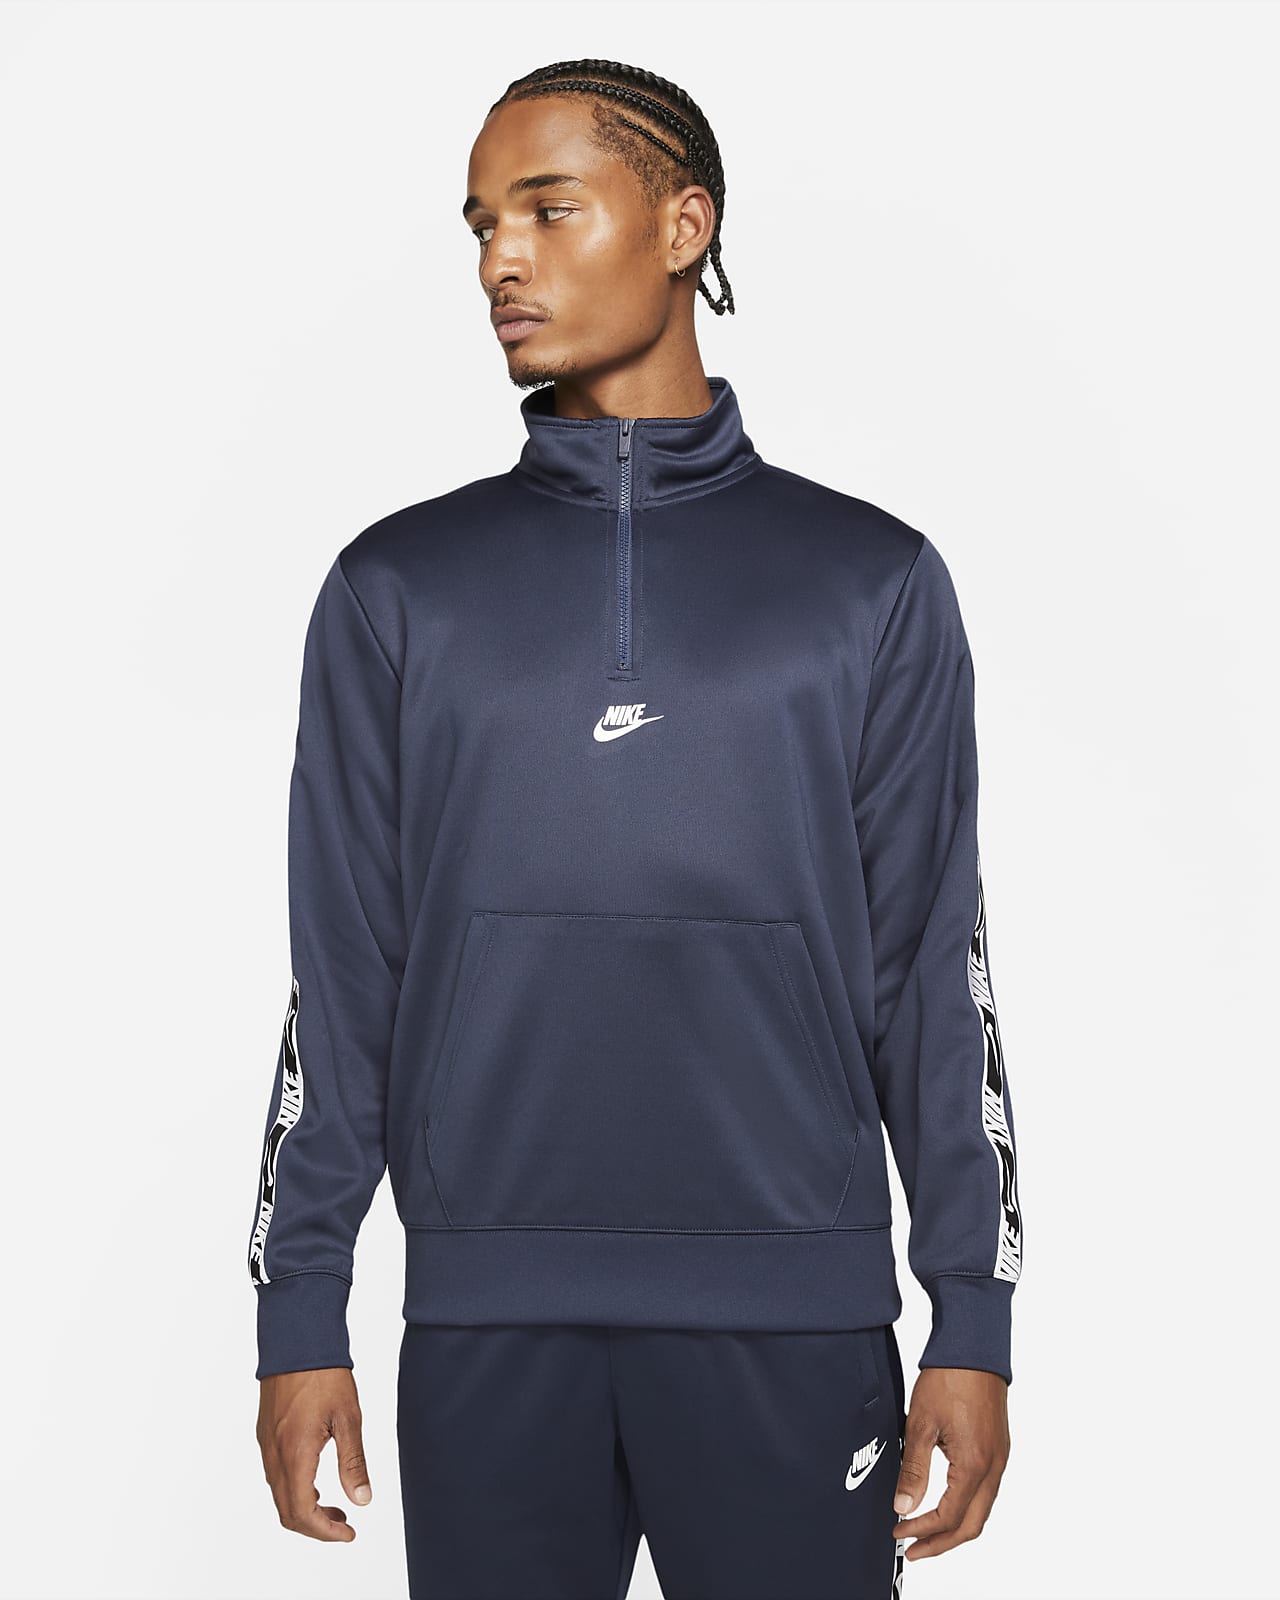 Nike Sportswear Men's Half-Zip Top